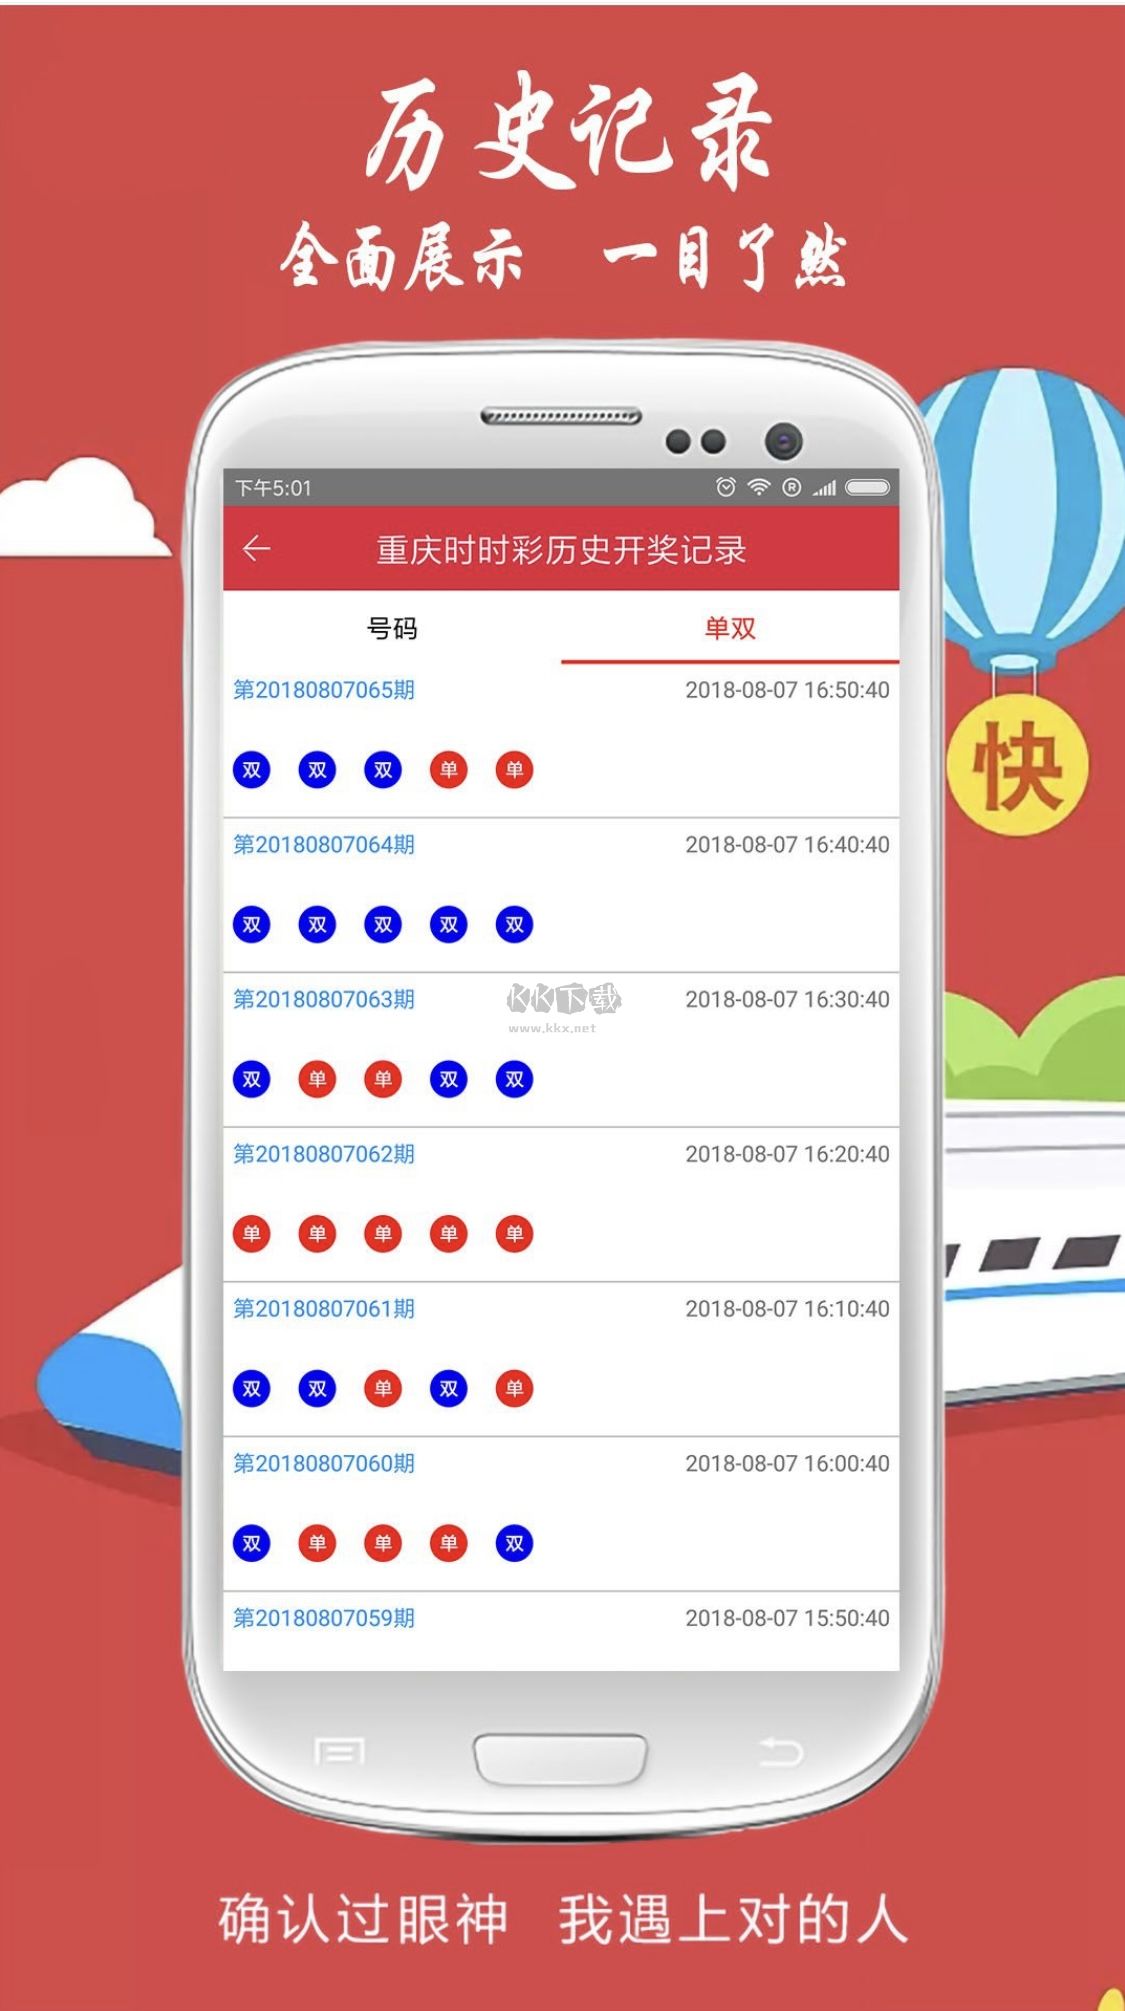 33cc彩票官方版app最新版